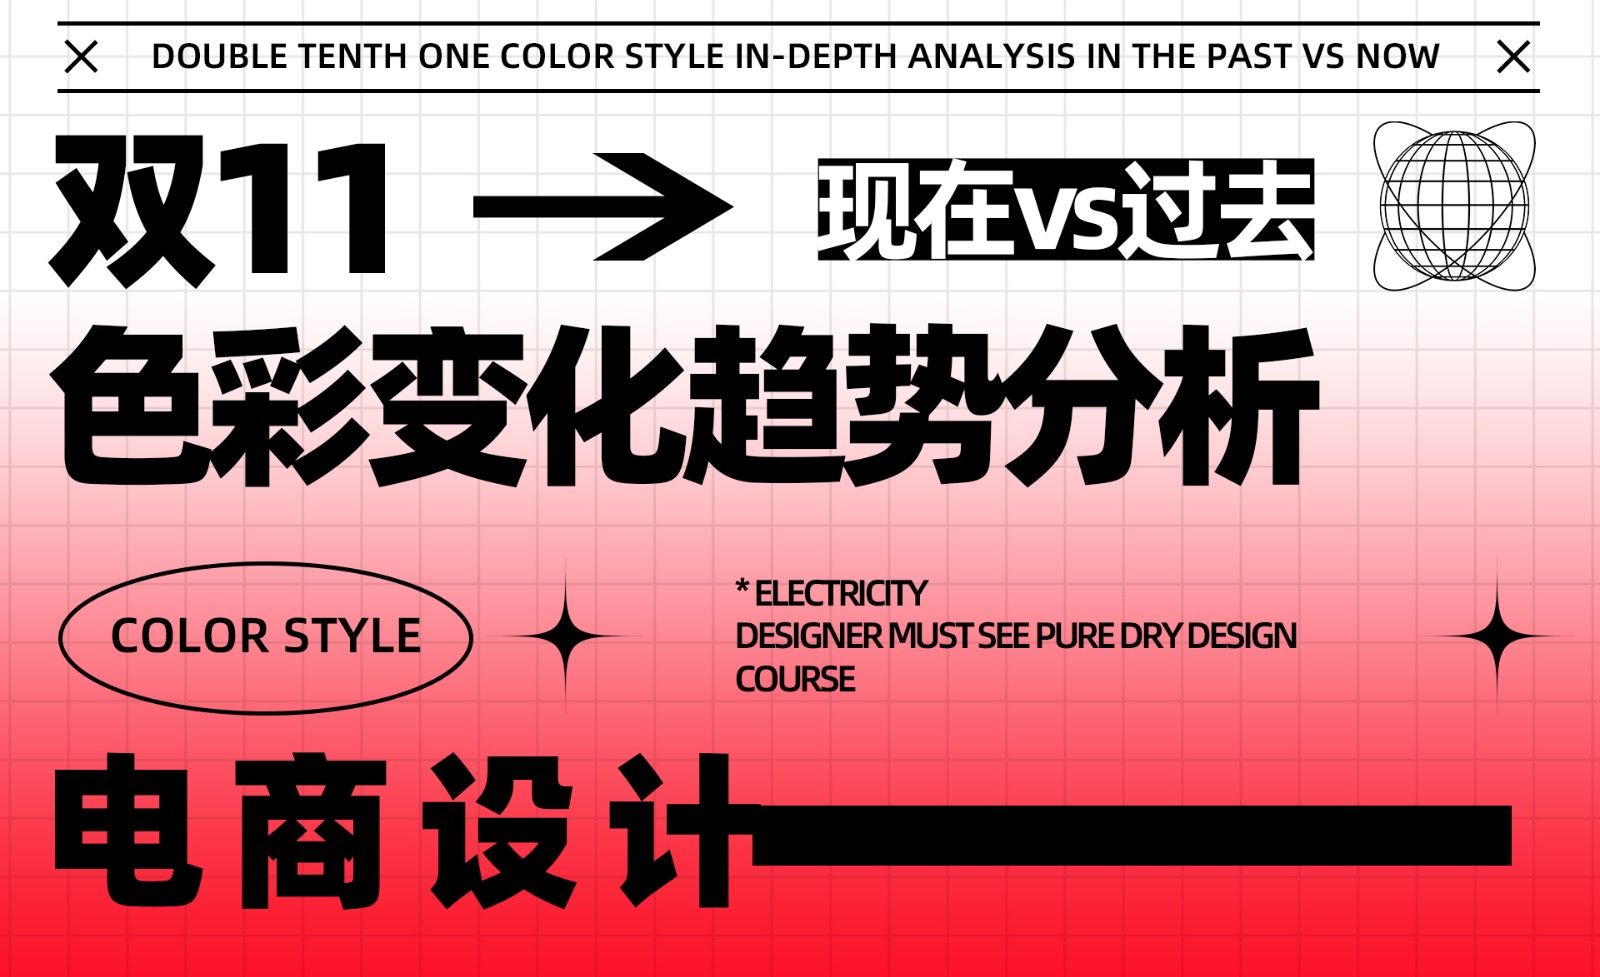 双11色彩风格【过去vs现在】深度解析-上